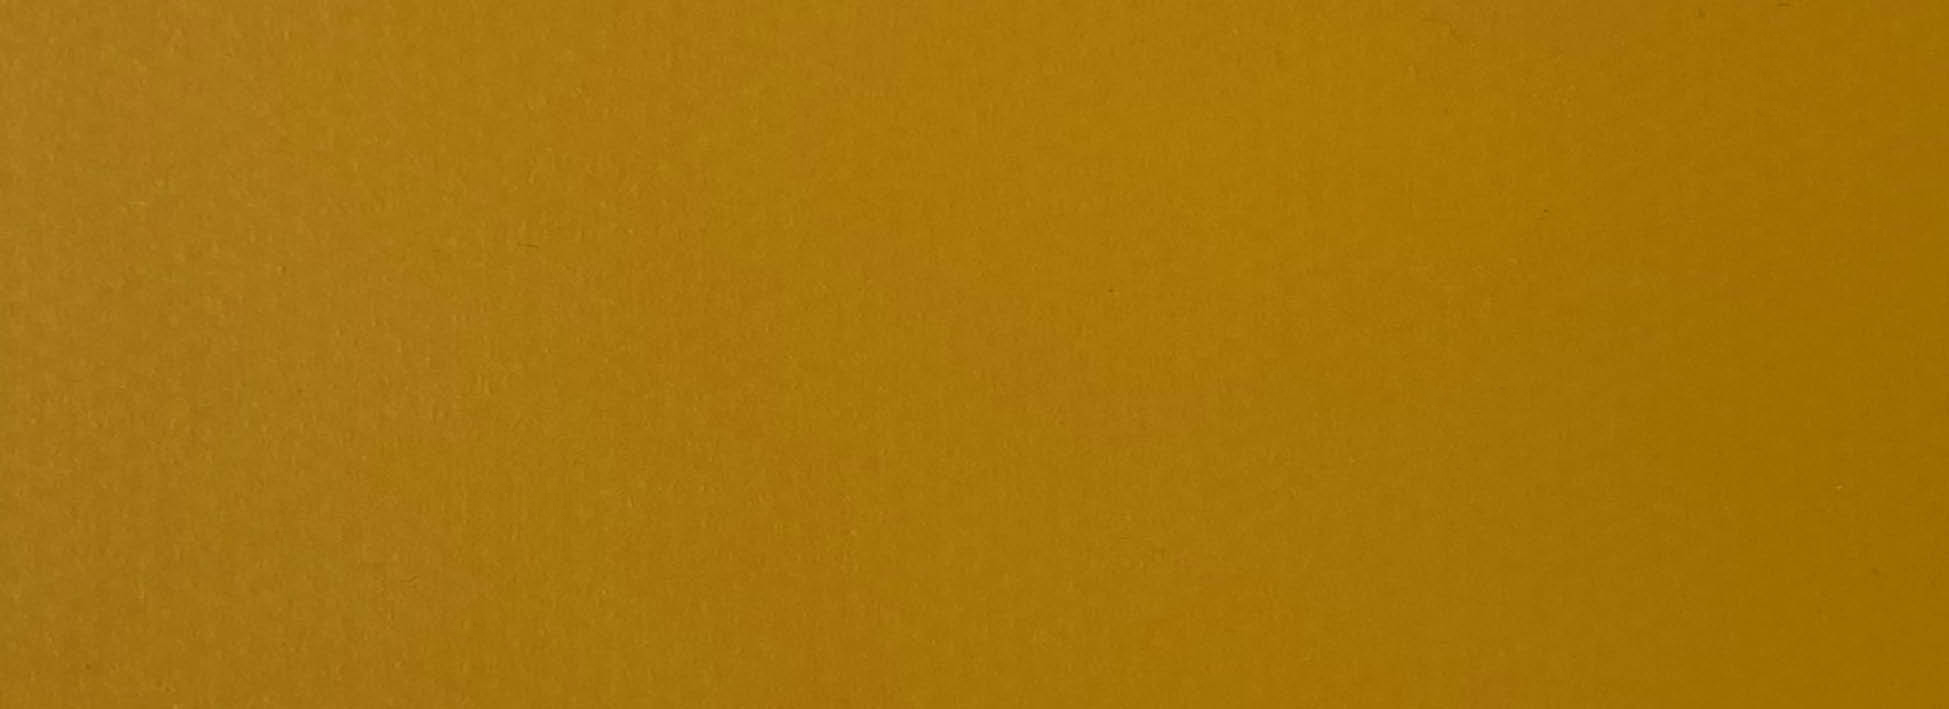 Yellow SunFlower